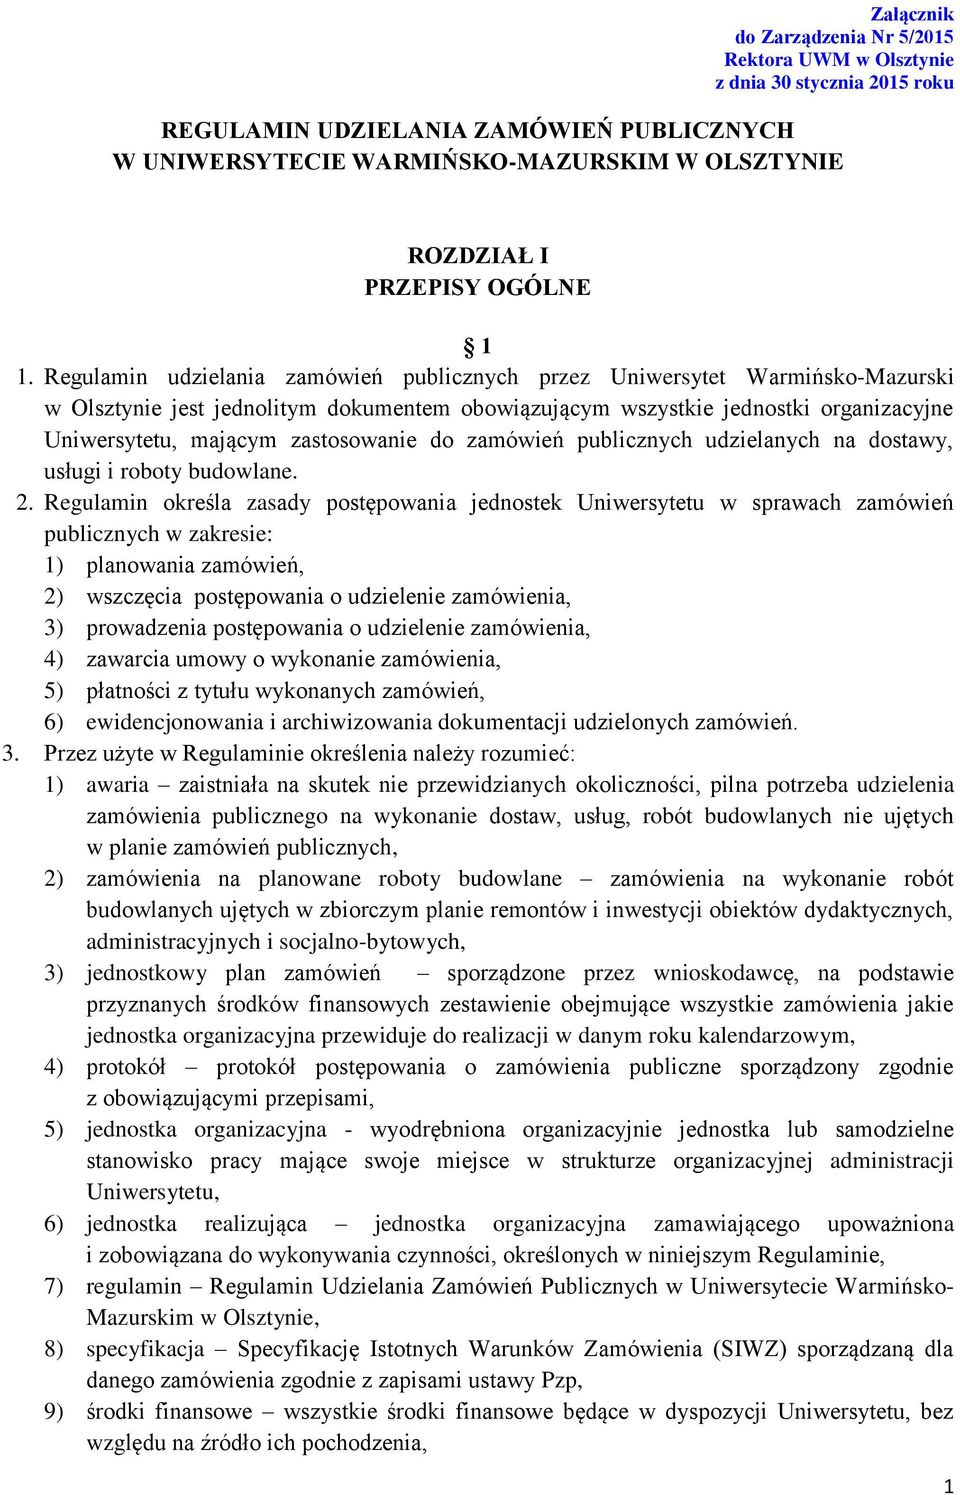 Regulamin udzielania zamówień publicznych przez Uniwersytet Warmińsko-Mazurski w Olsztynie jest jednolitym dokumentem obowiązującym wszystkie jednostki organizacyjne Uniwersytetu, mającym